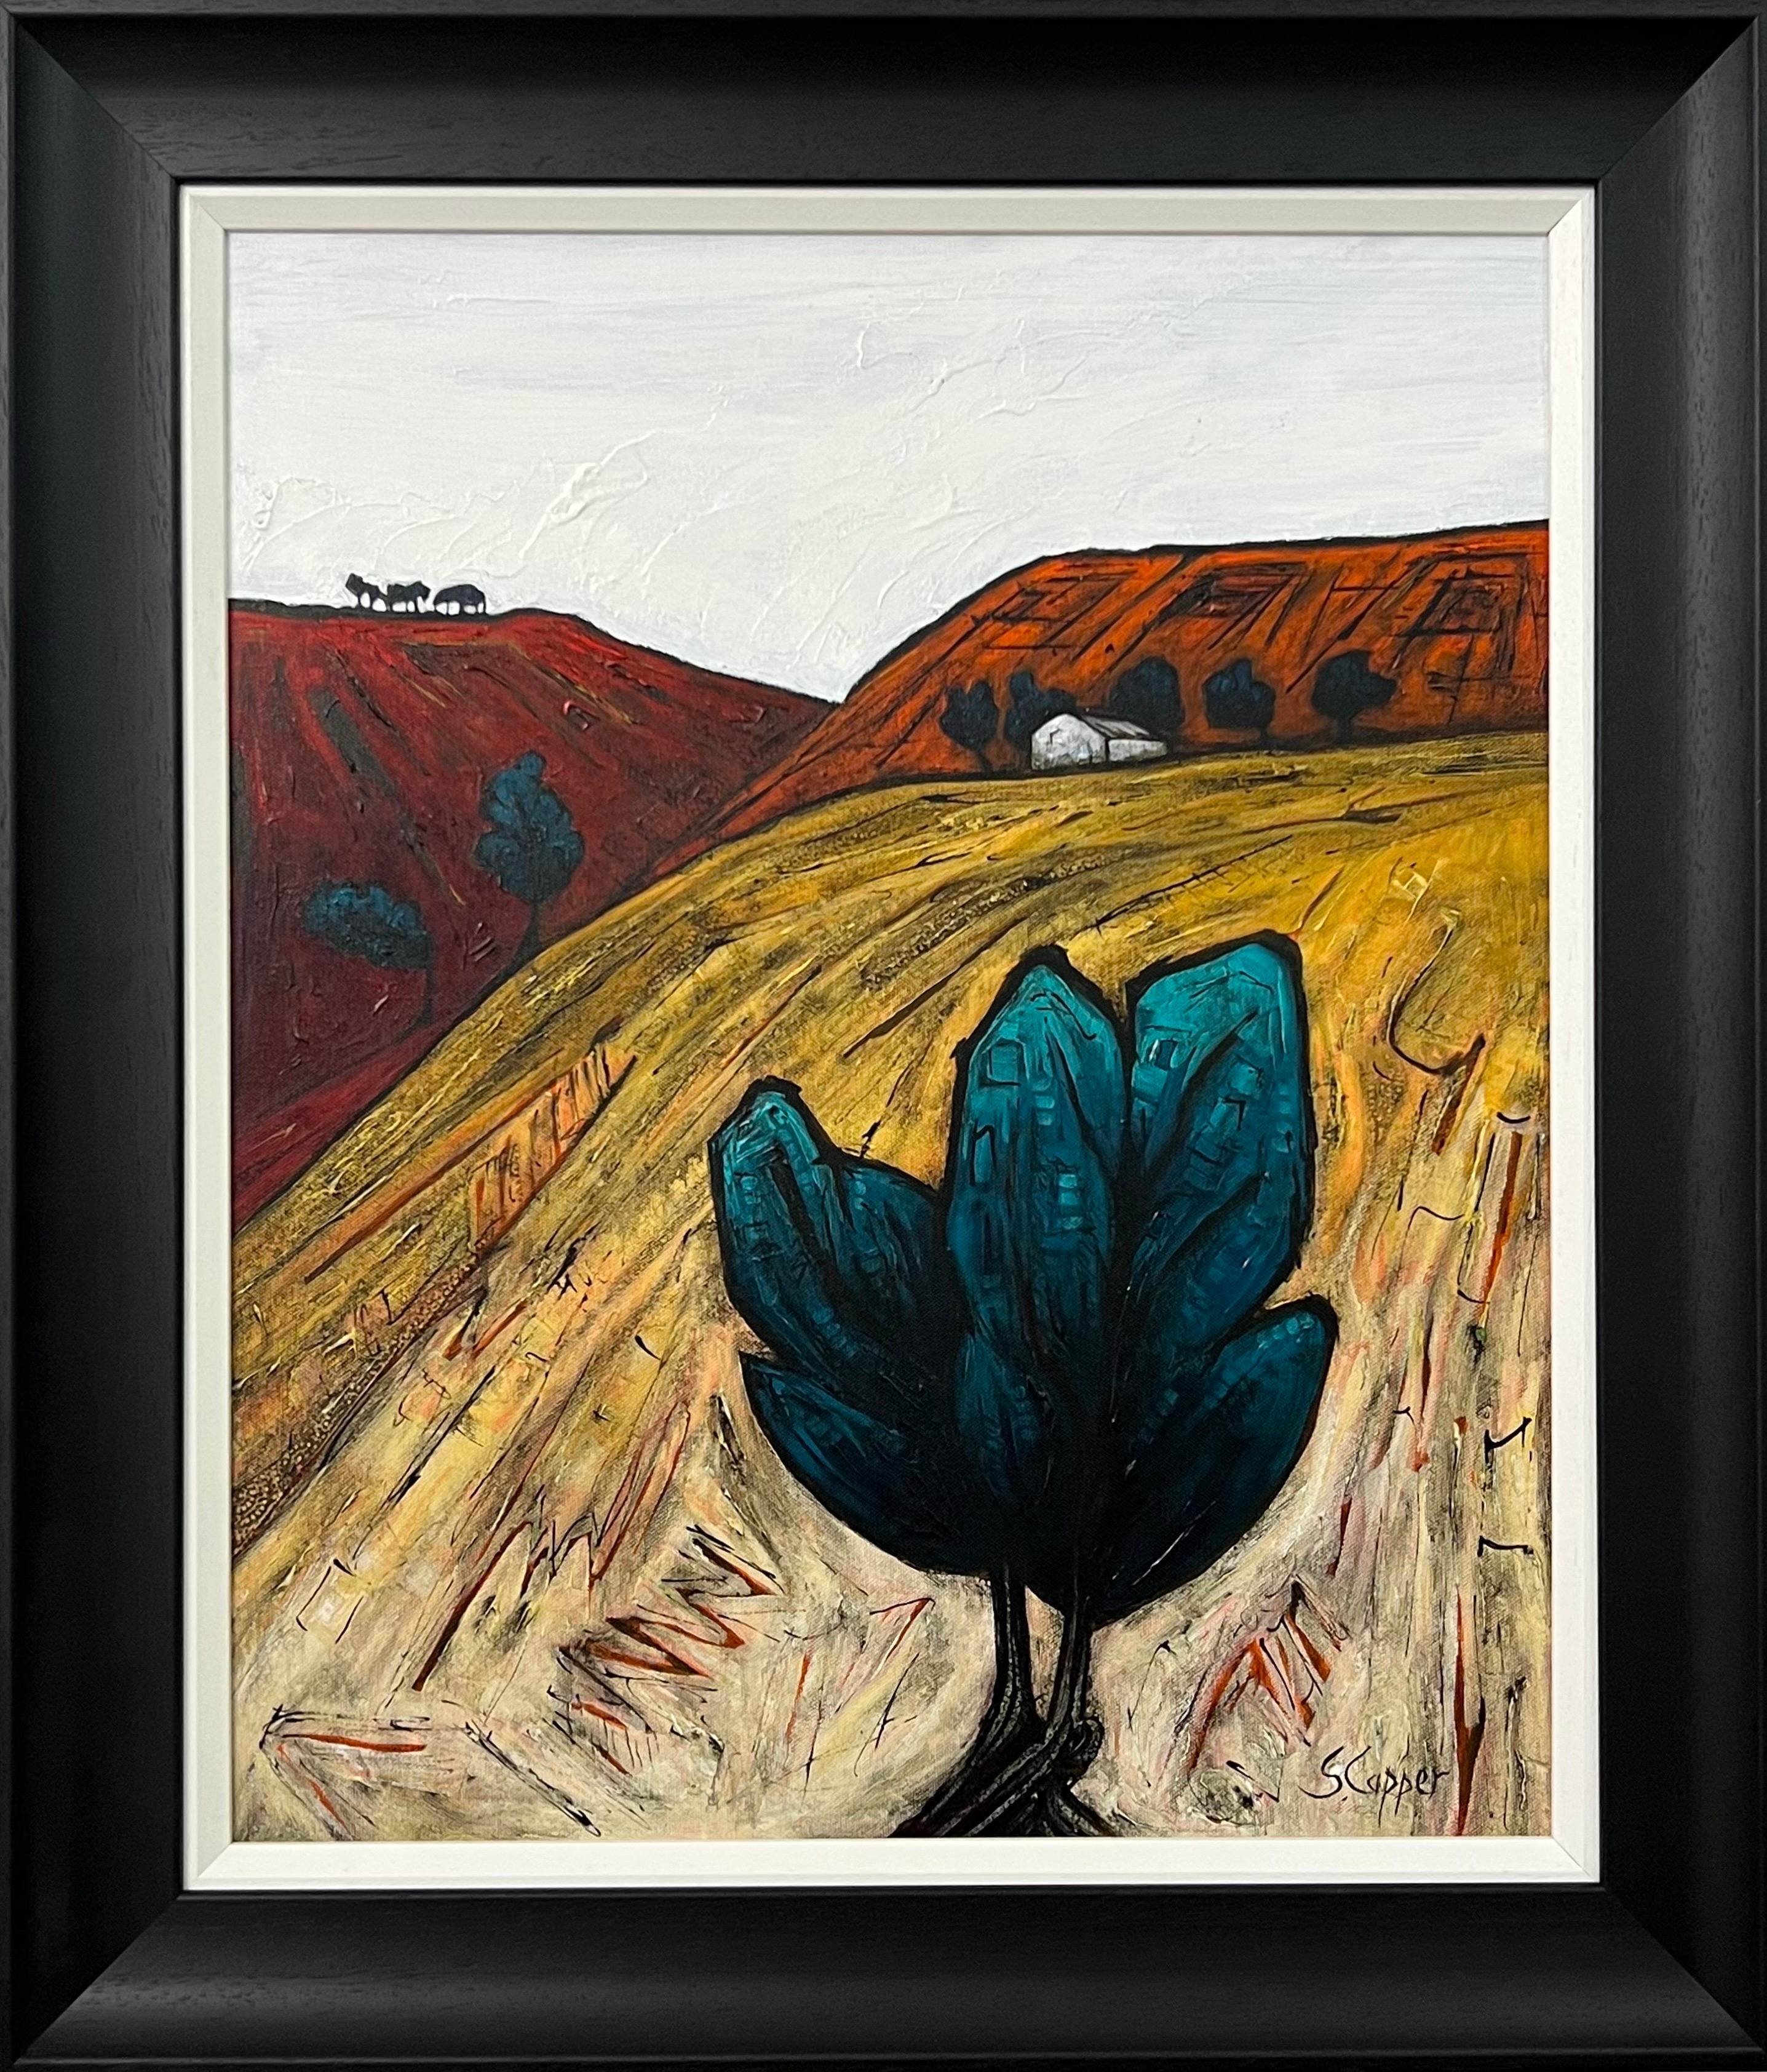 Landscape Painting Steve Capper - Peinture de paysage abstrait d'un arbre solitaire sur un artiste britannique cubiste et fauviste